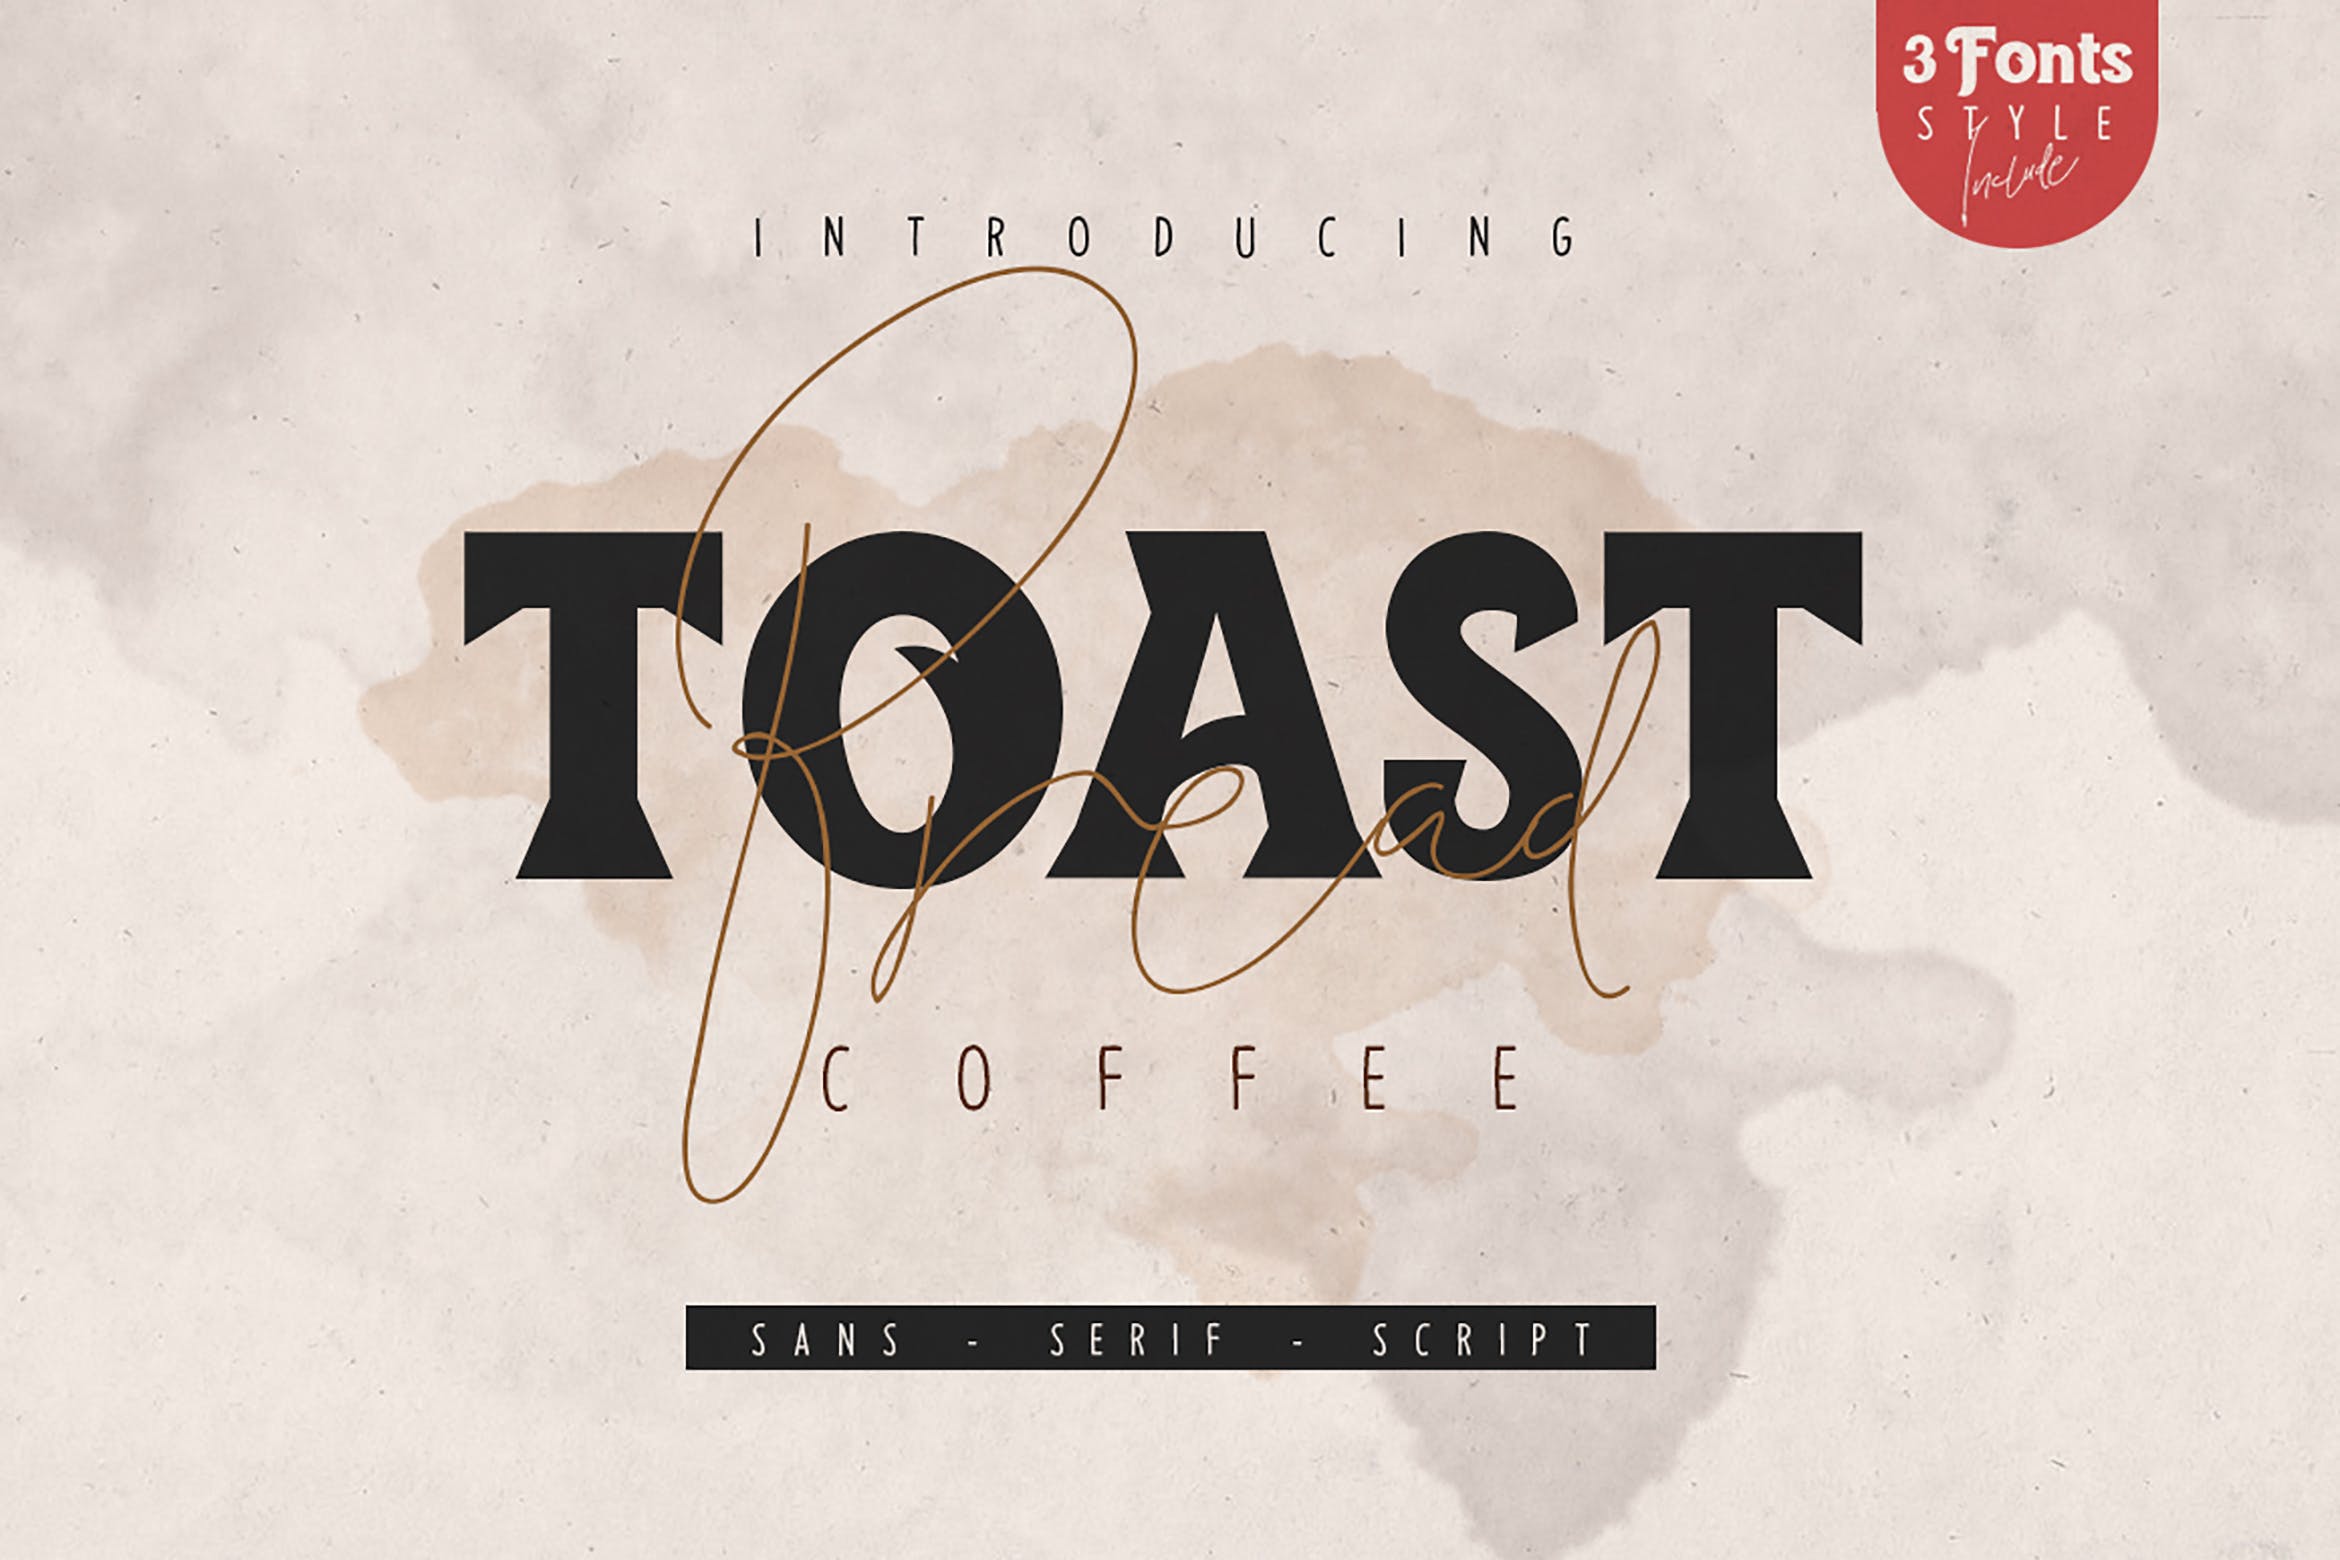 创意装饰设计/无衬线字体/连笔书法钢笔字体三合一 Toast Bread Coffee Typeface插图